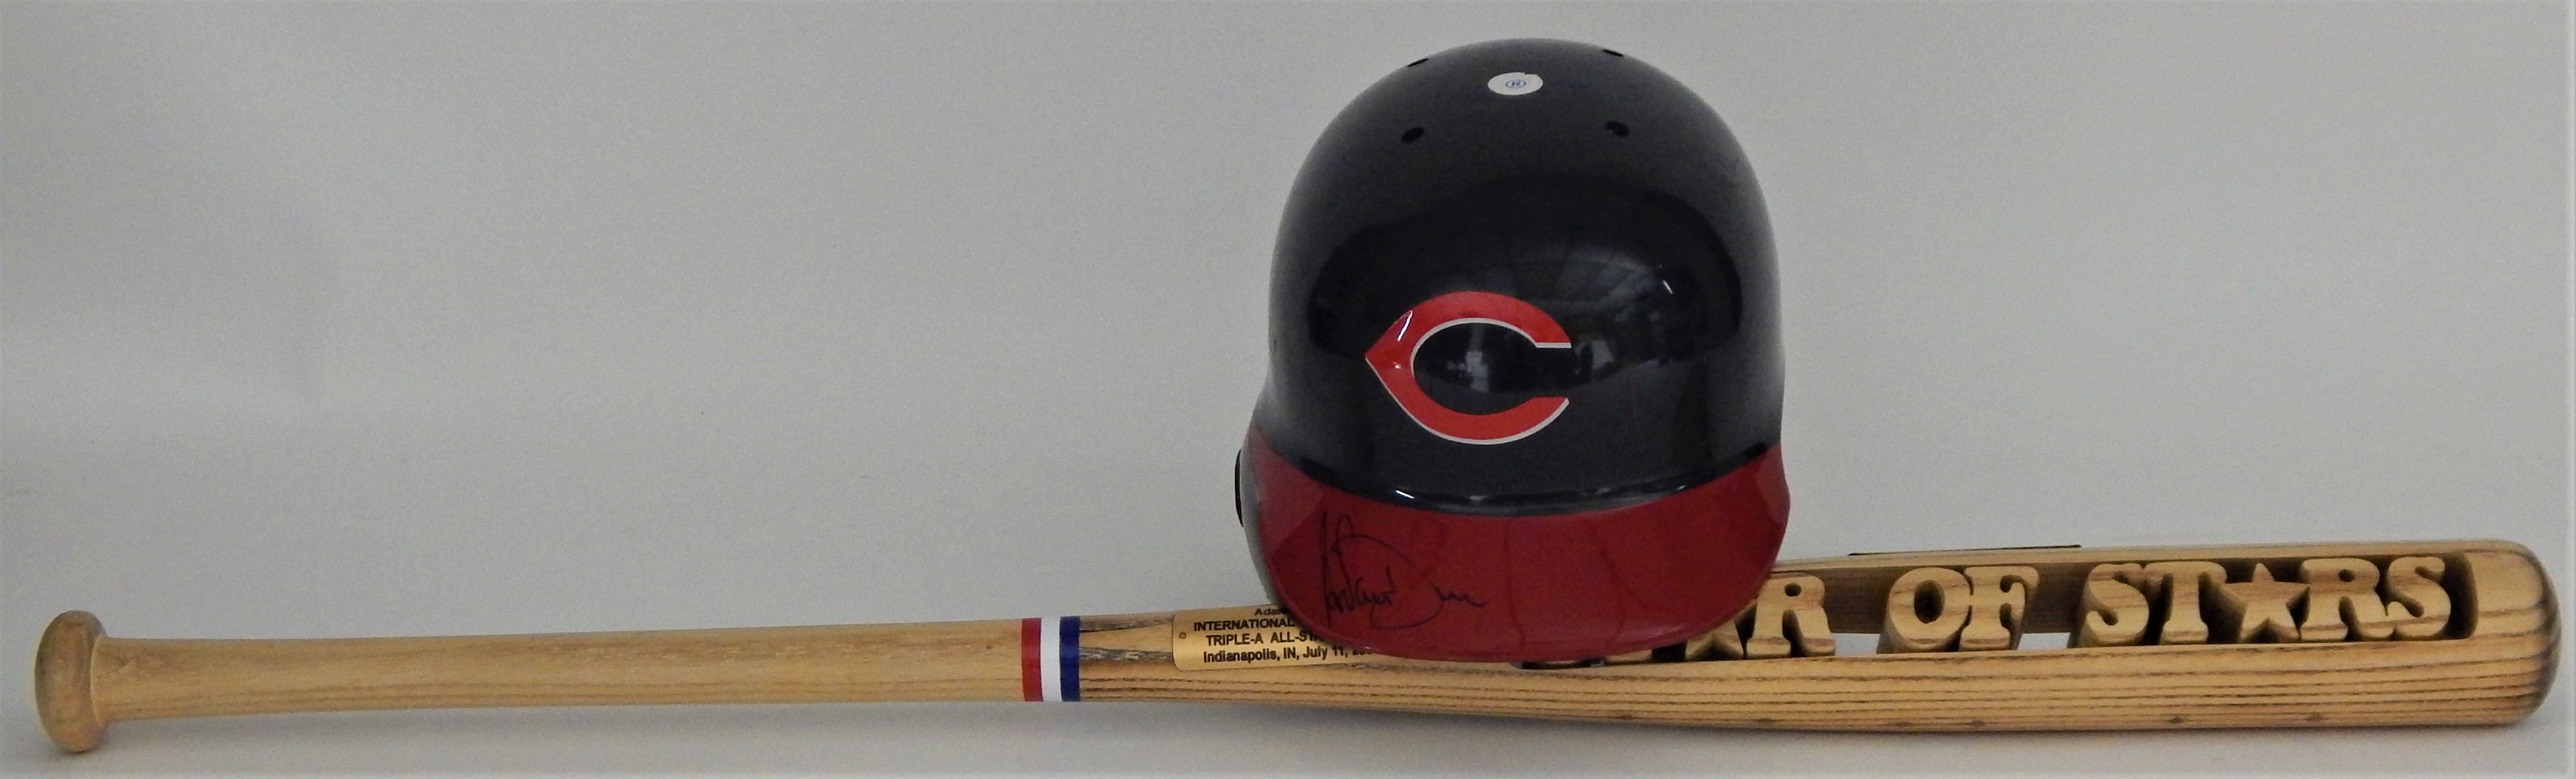 - Adam Dunn Minor League Award Bat and Signed Reds Helmet (Bernie Stowe Collection)